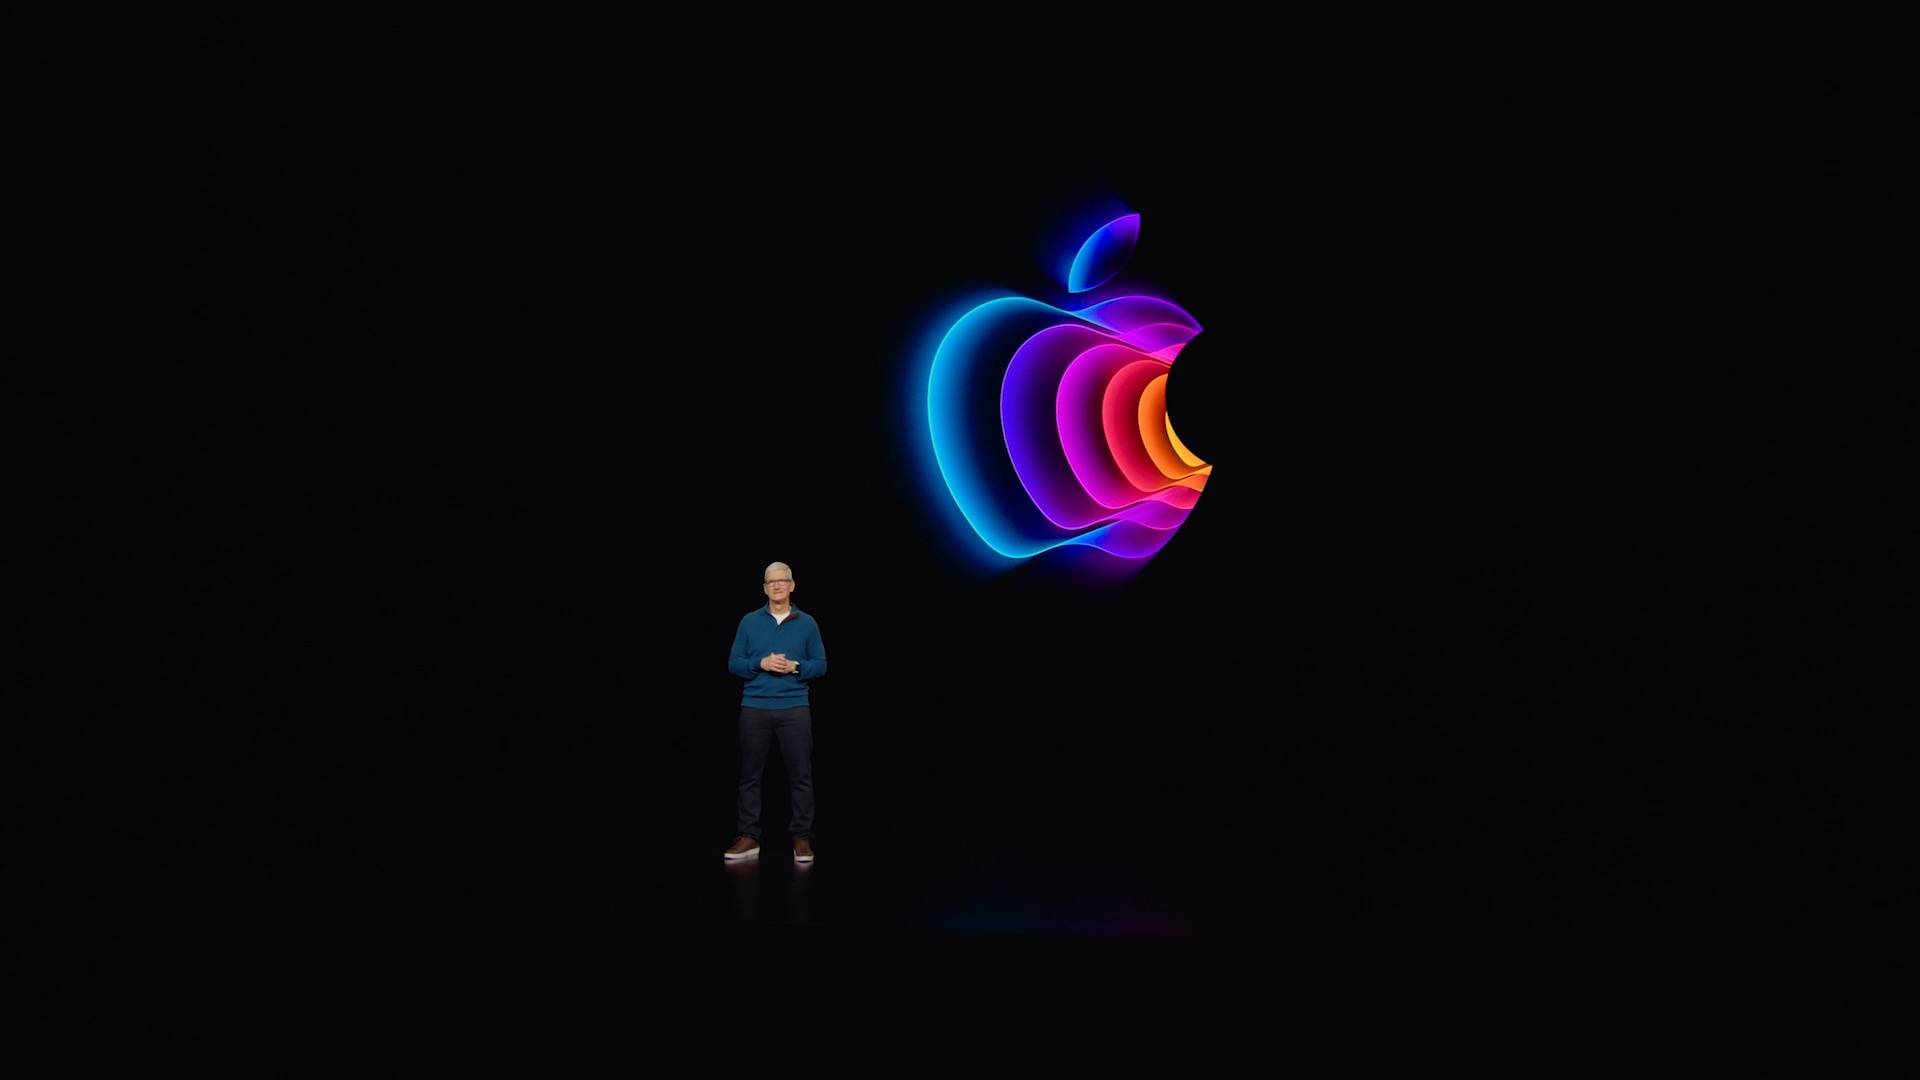 1 8 - Il riassunto completo della conferenza di Apple: l’iPhone 5G più economico non è il protagonista, e il chip “Wang fried” M1 Ultra è così forte che si sente solo